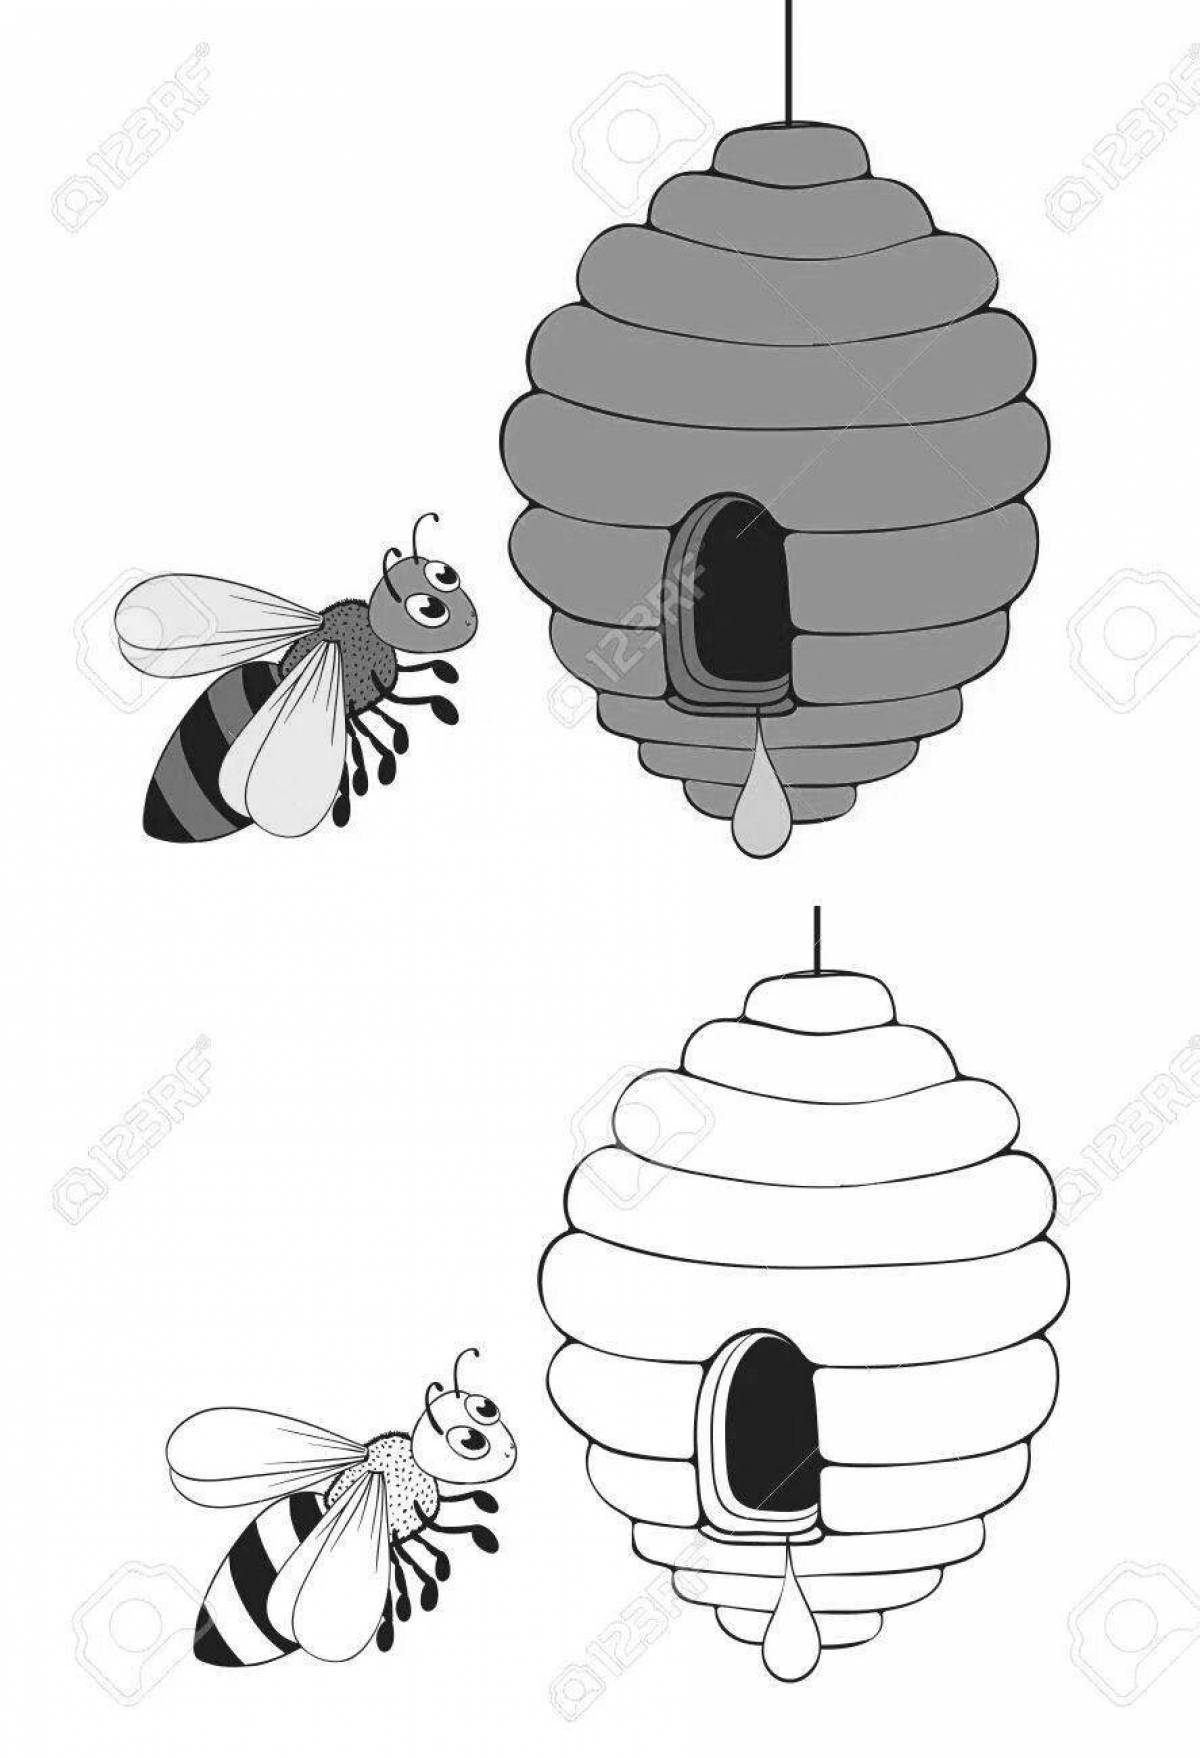 Раскраска Пятачок и улей пчёл